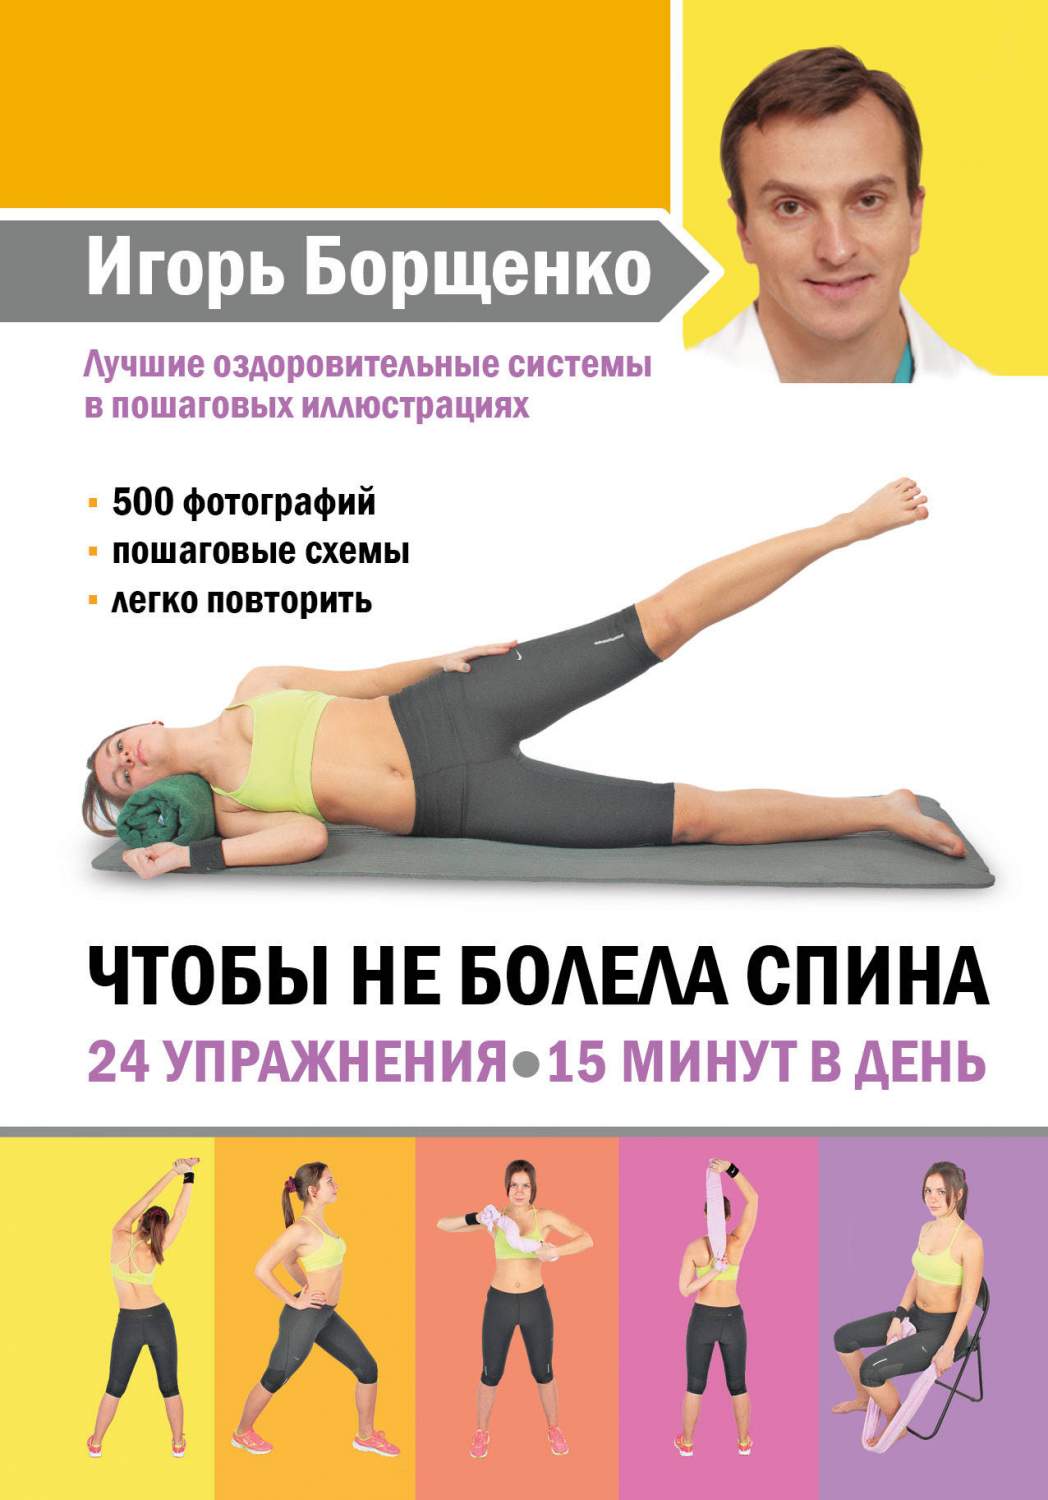 Тренировка 15 минут. Занятия чтобы не болела спина. Упражнения чтобы не болела спина. Чтобы не болела спина. 24 Упражнения. Игоря Борщенко чтобы не болела спина спина.